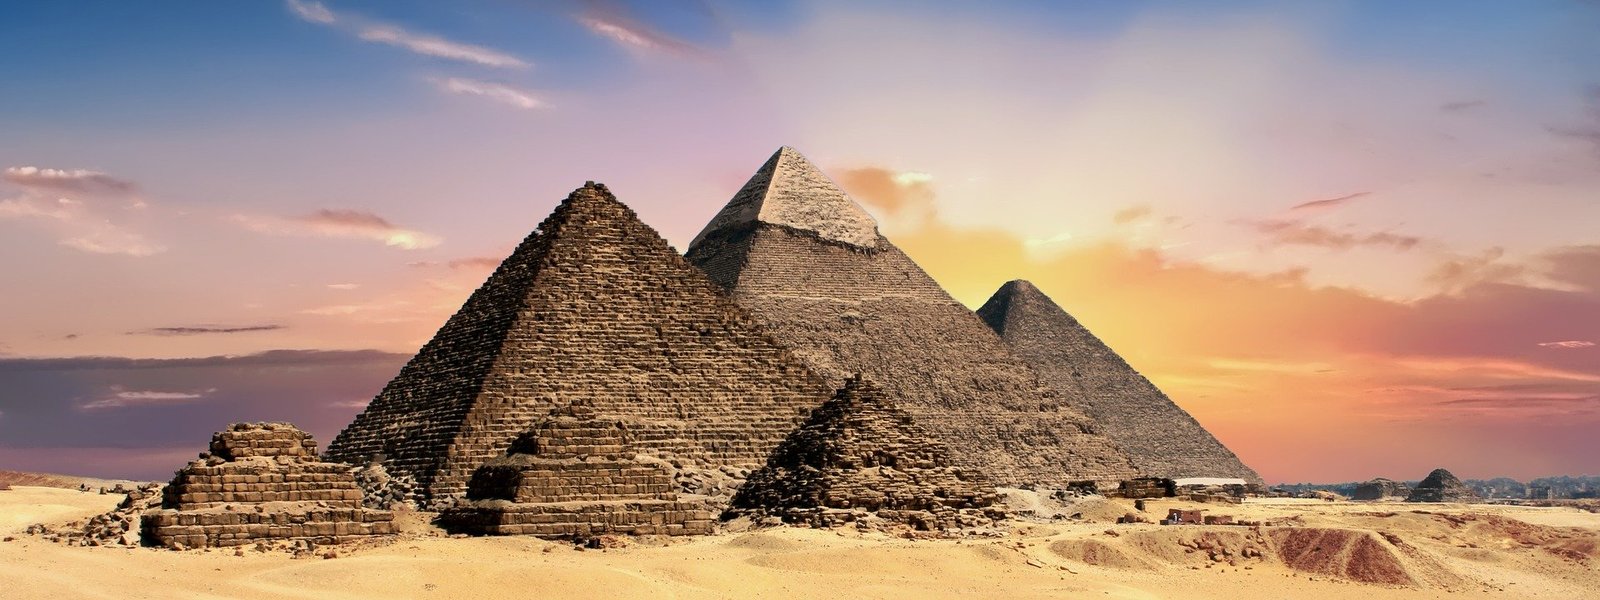 pyramids-Egypt